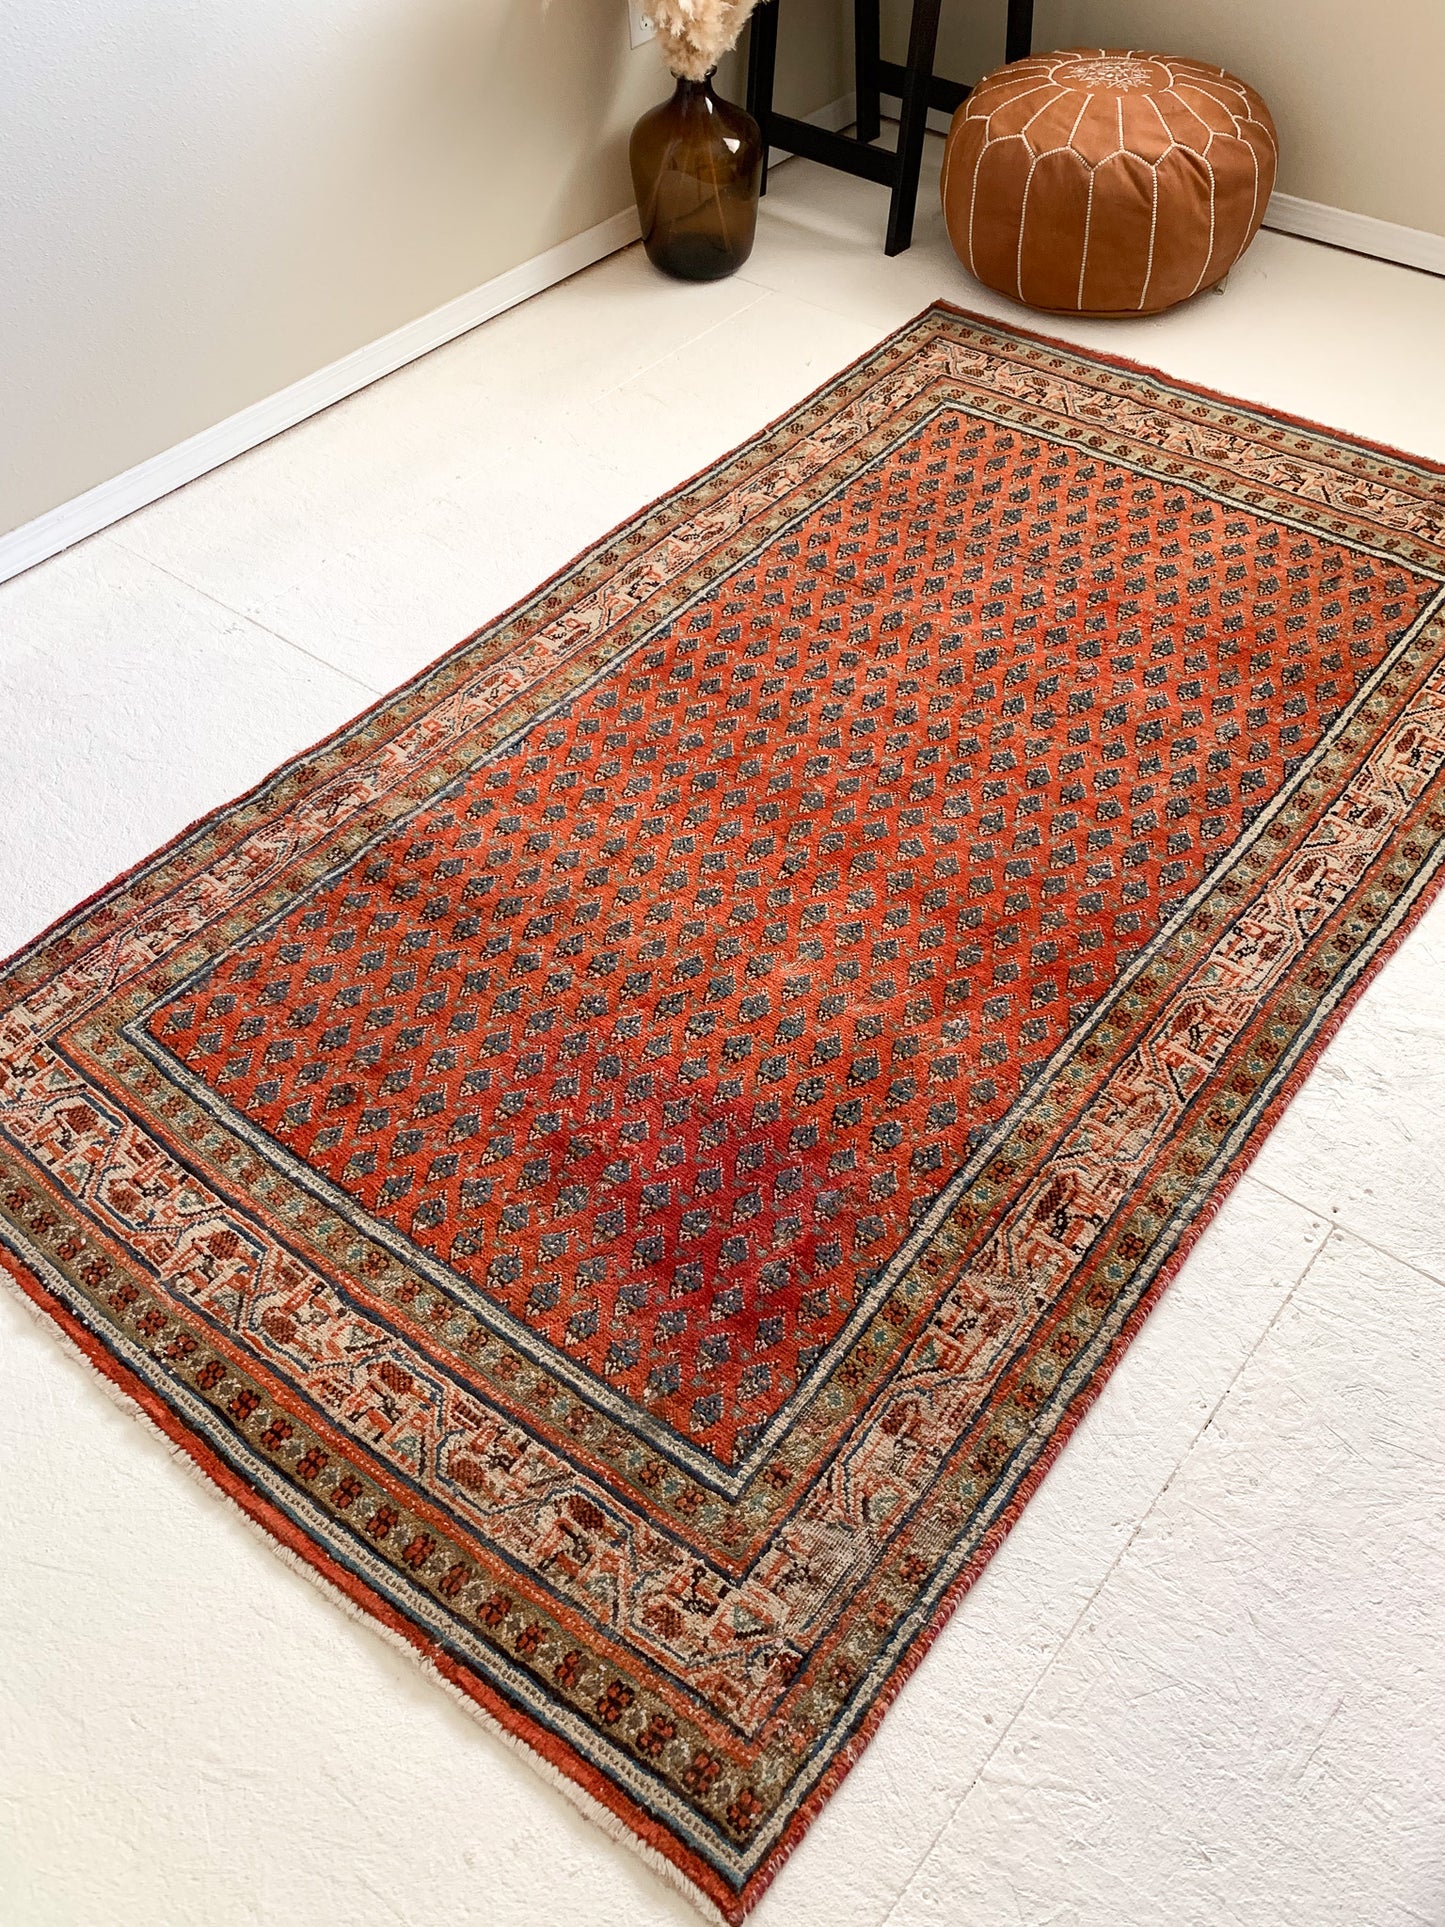 No. A1078 - 4.1' x 7.3' Vintage Persian Area Rug